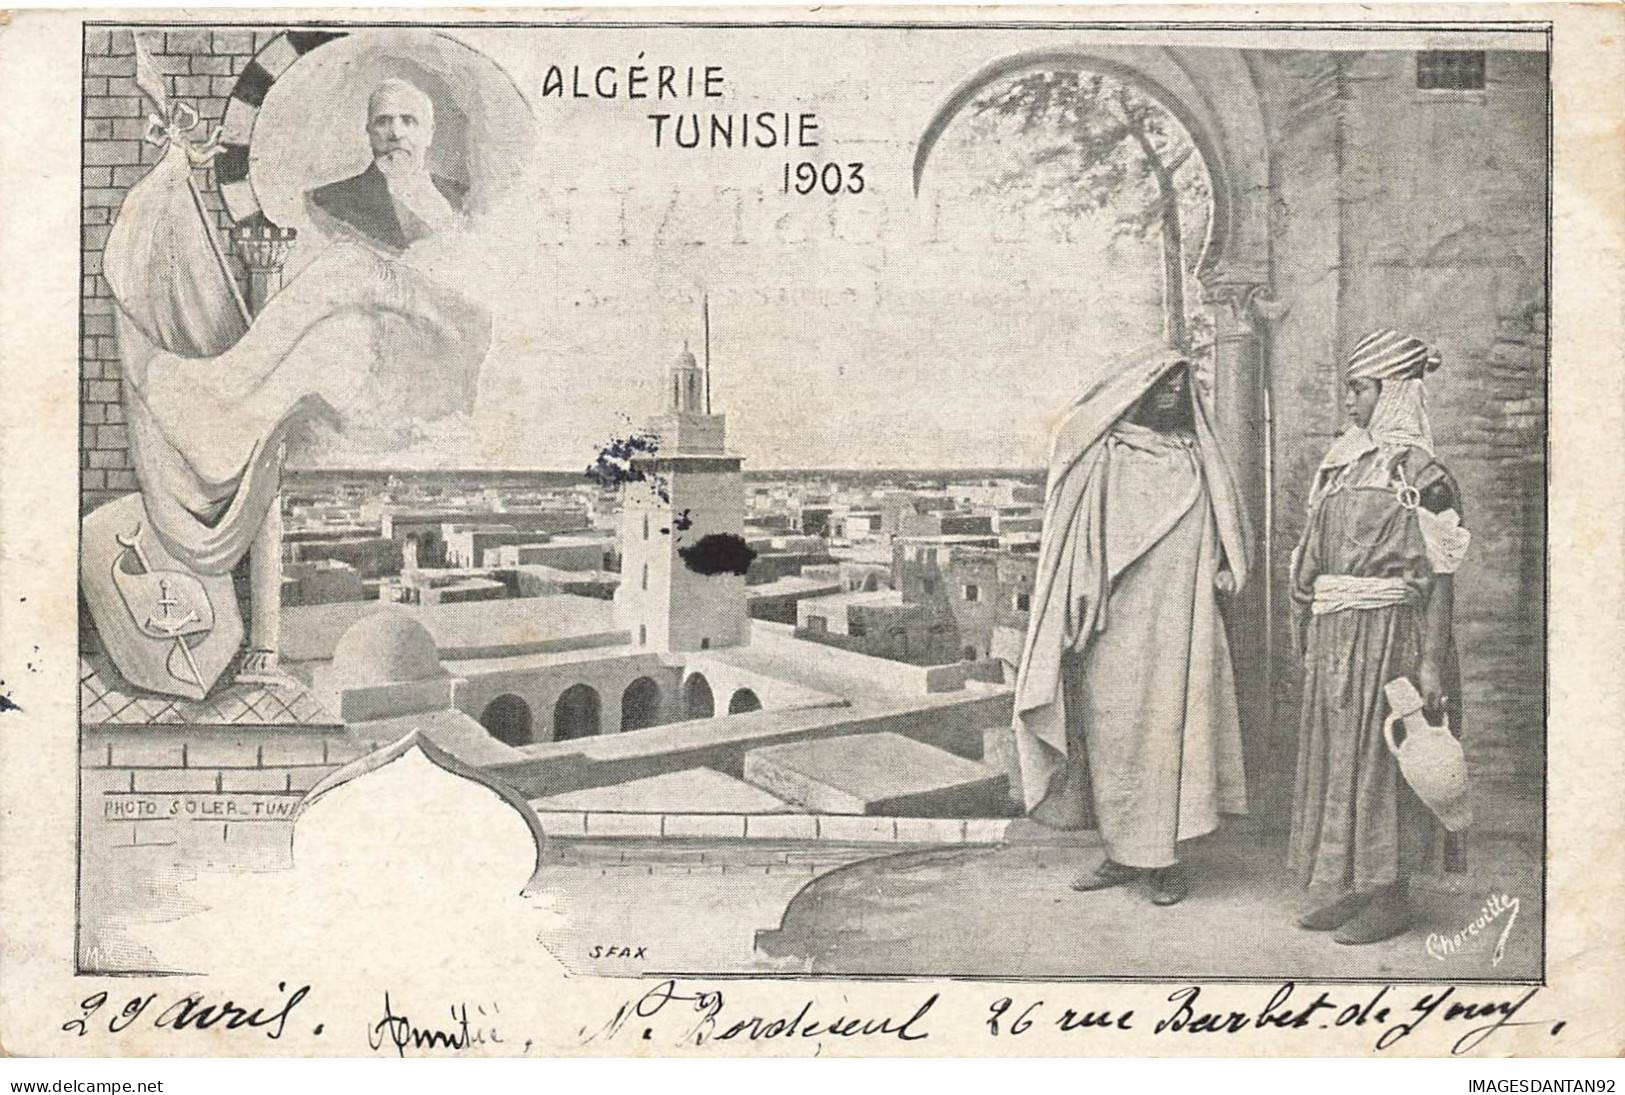 ALGERIE TUNISIE #32510 SFAX CARTE TYPE GRUSS DECOR ART NOUVEAU 1903 - Tunisia